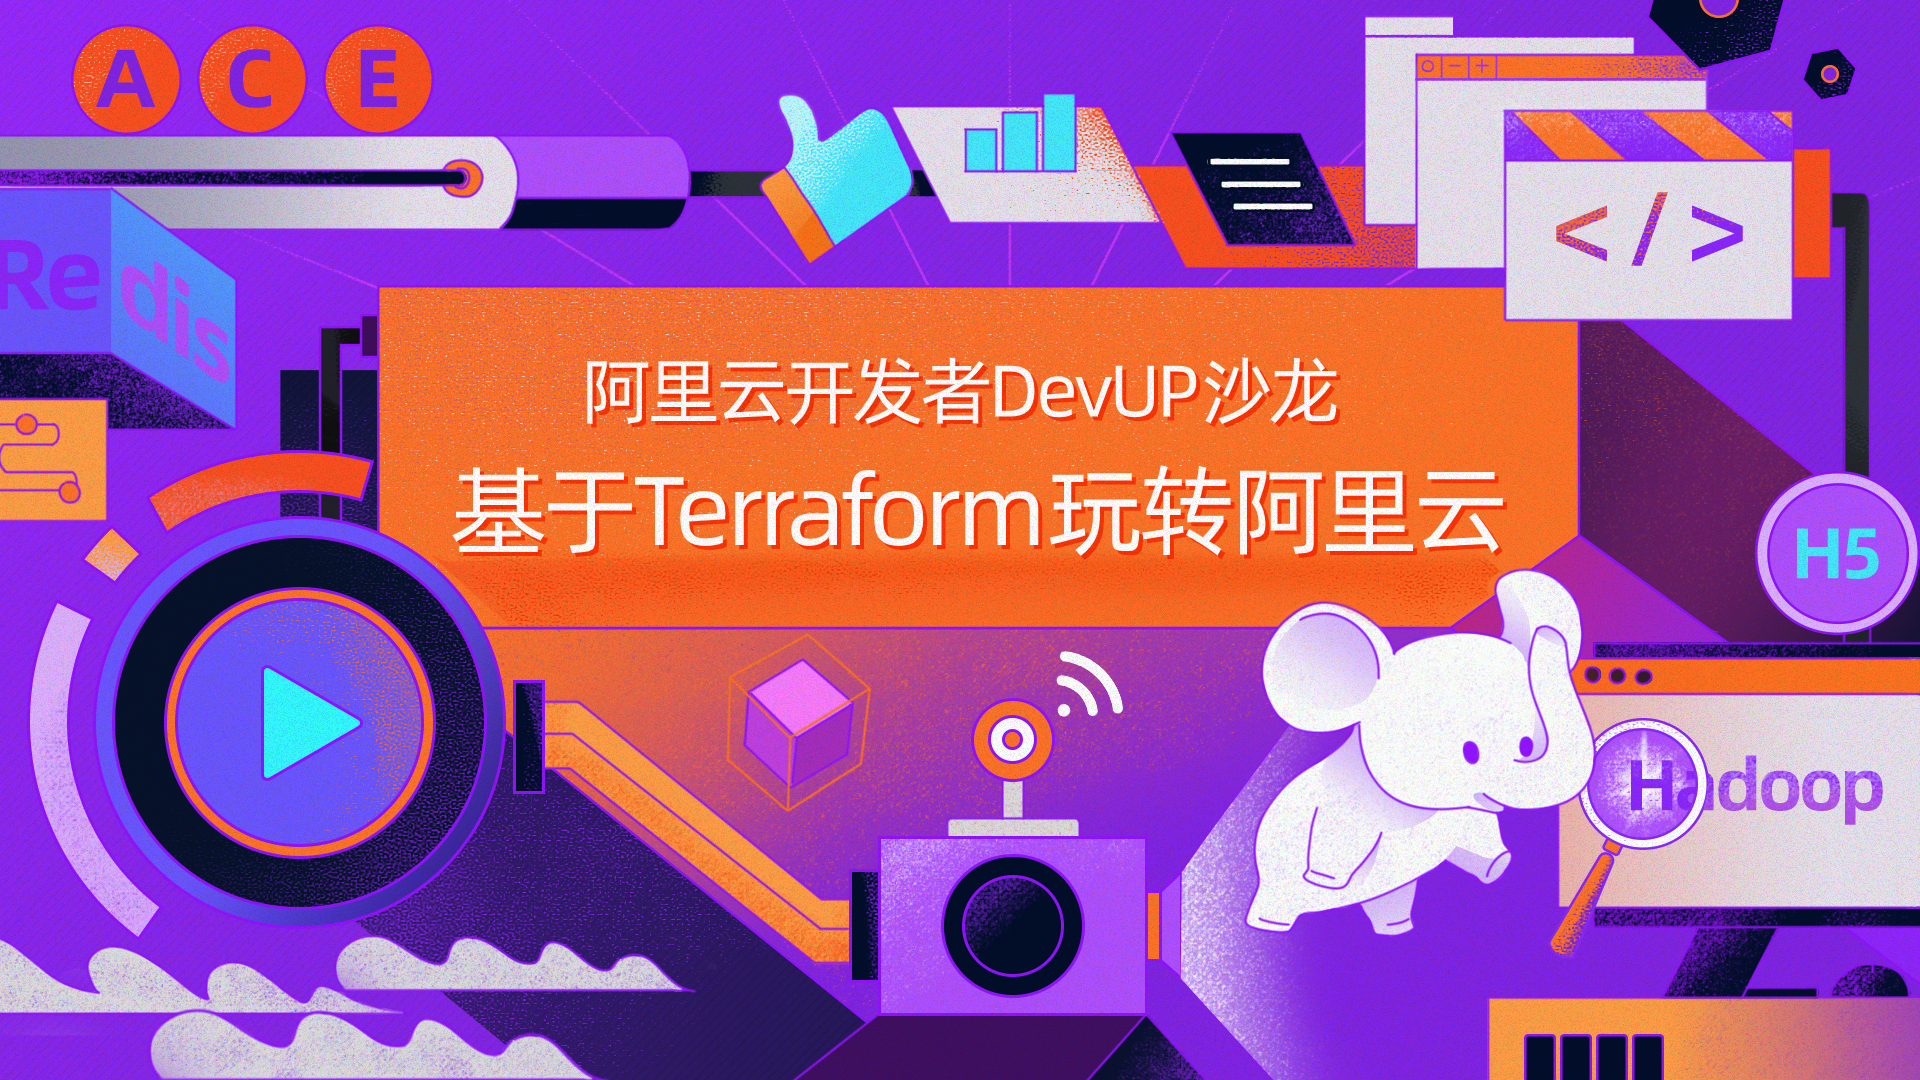 阿里云开发者 DevUP 沙龙 -北京站 -基于Terraform玩转阿里云邀你参加啦